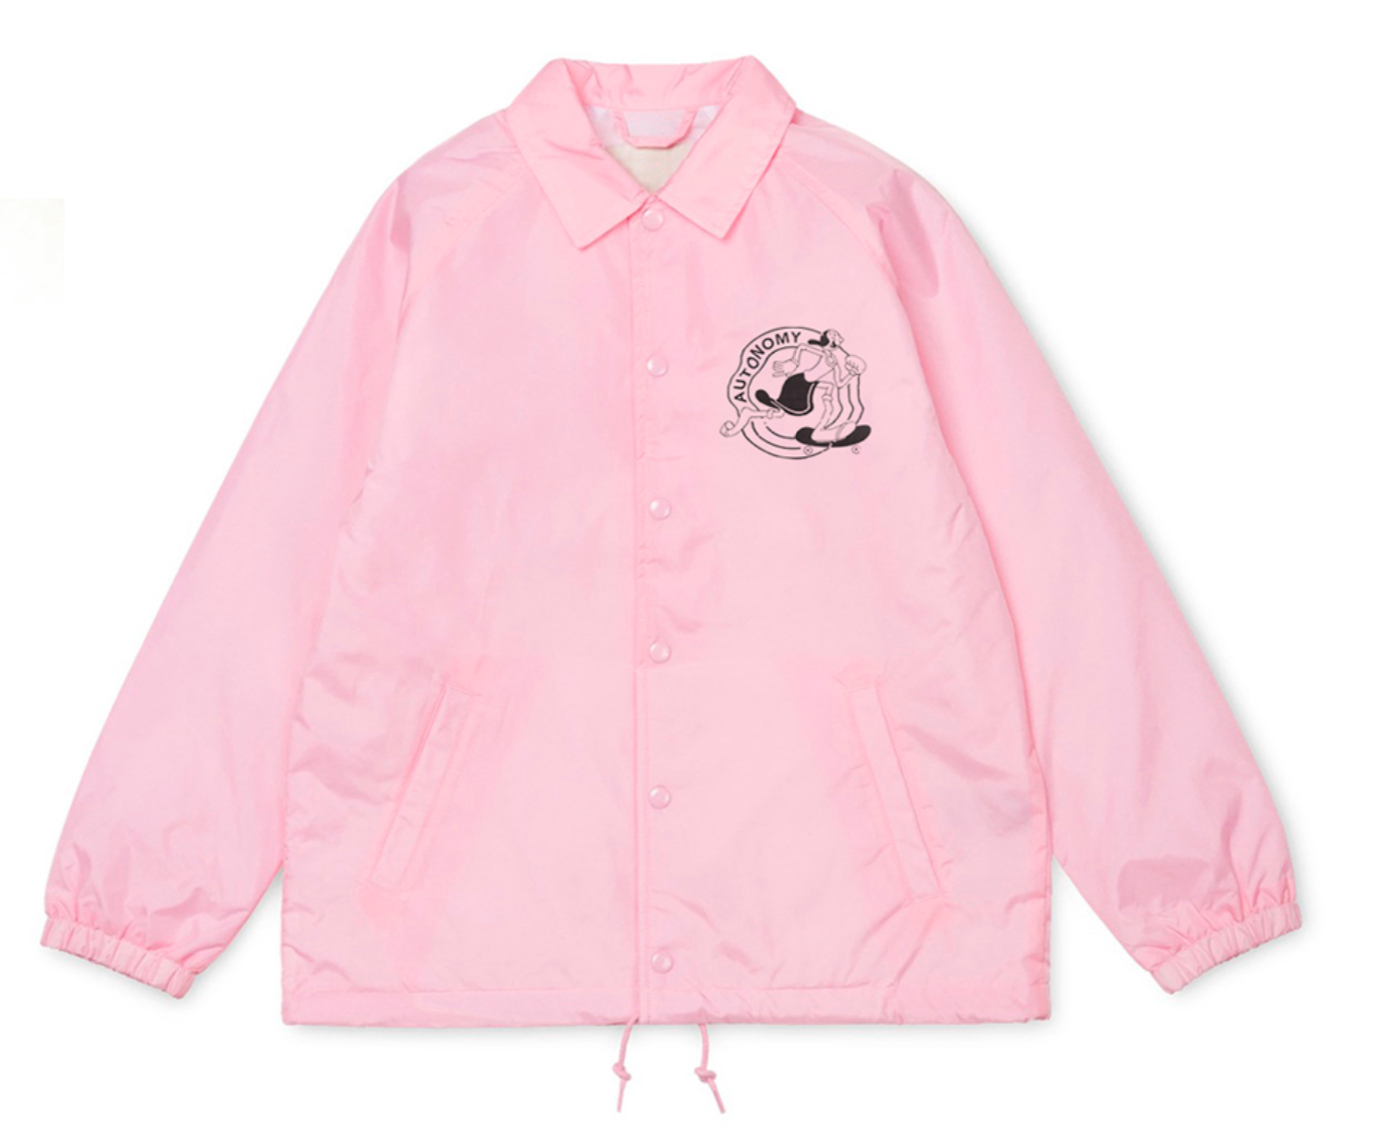 Autonomy Olivia Coaches Jacket - Pink